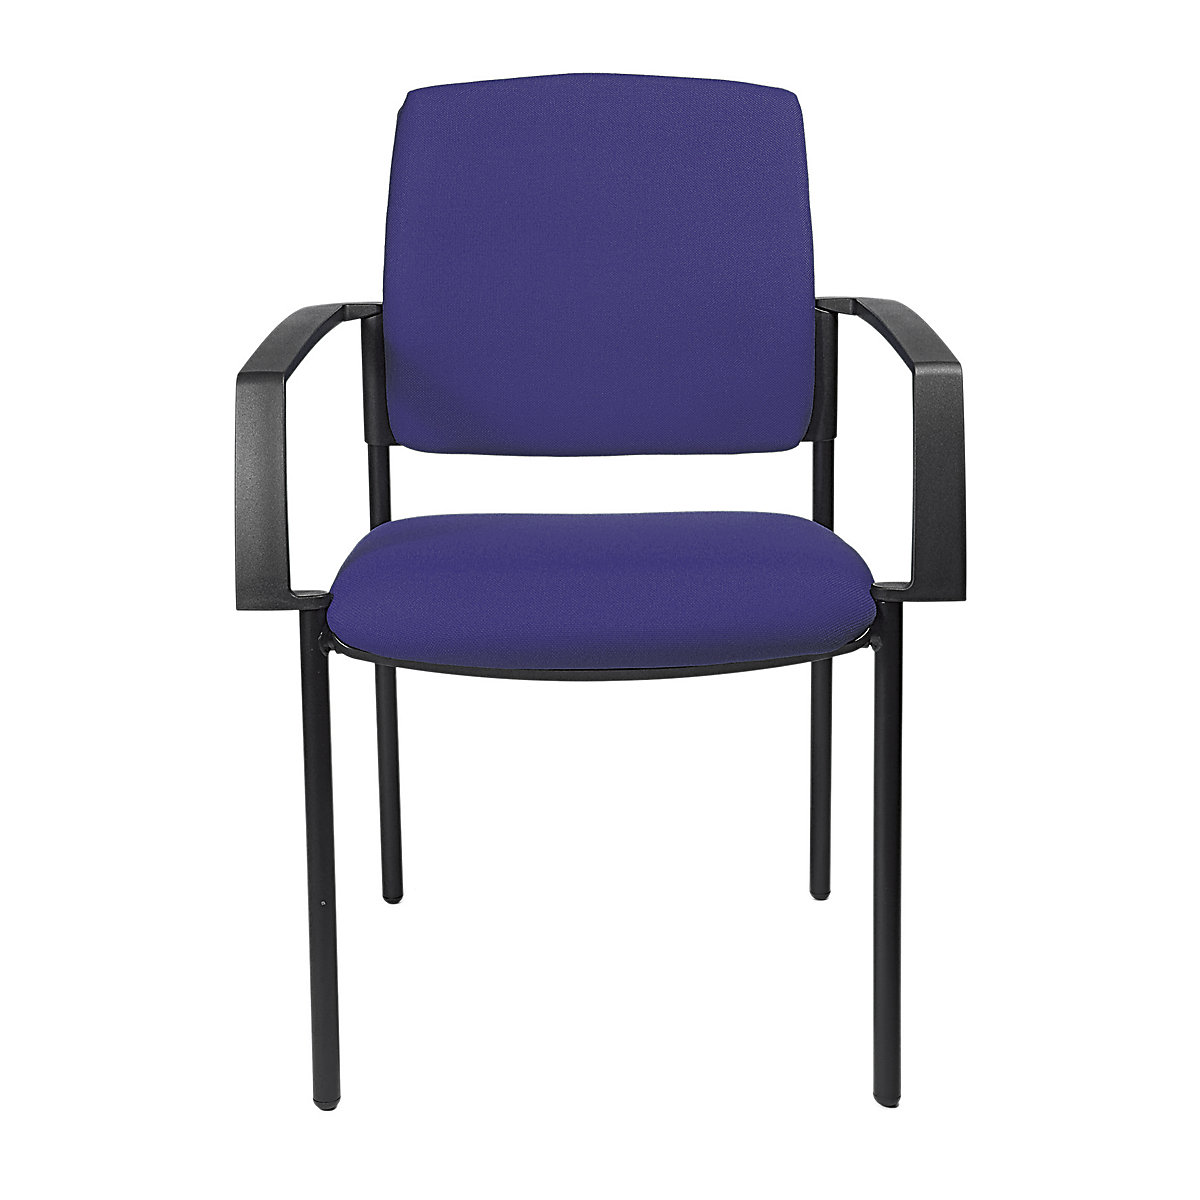 Čalúnená stohovacia stolička – Topstar, podstavec so štyrmi nohami, OJ 2 ks, podstavec čierna, čalúnenie modrá-5